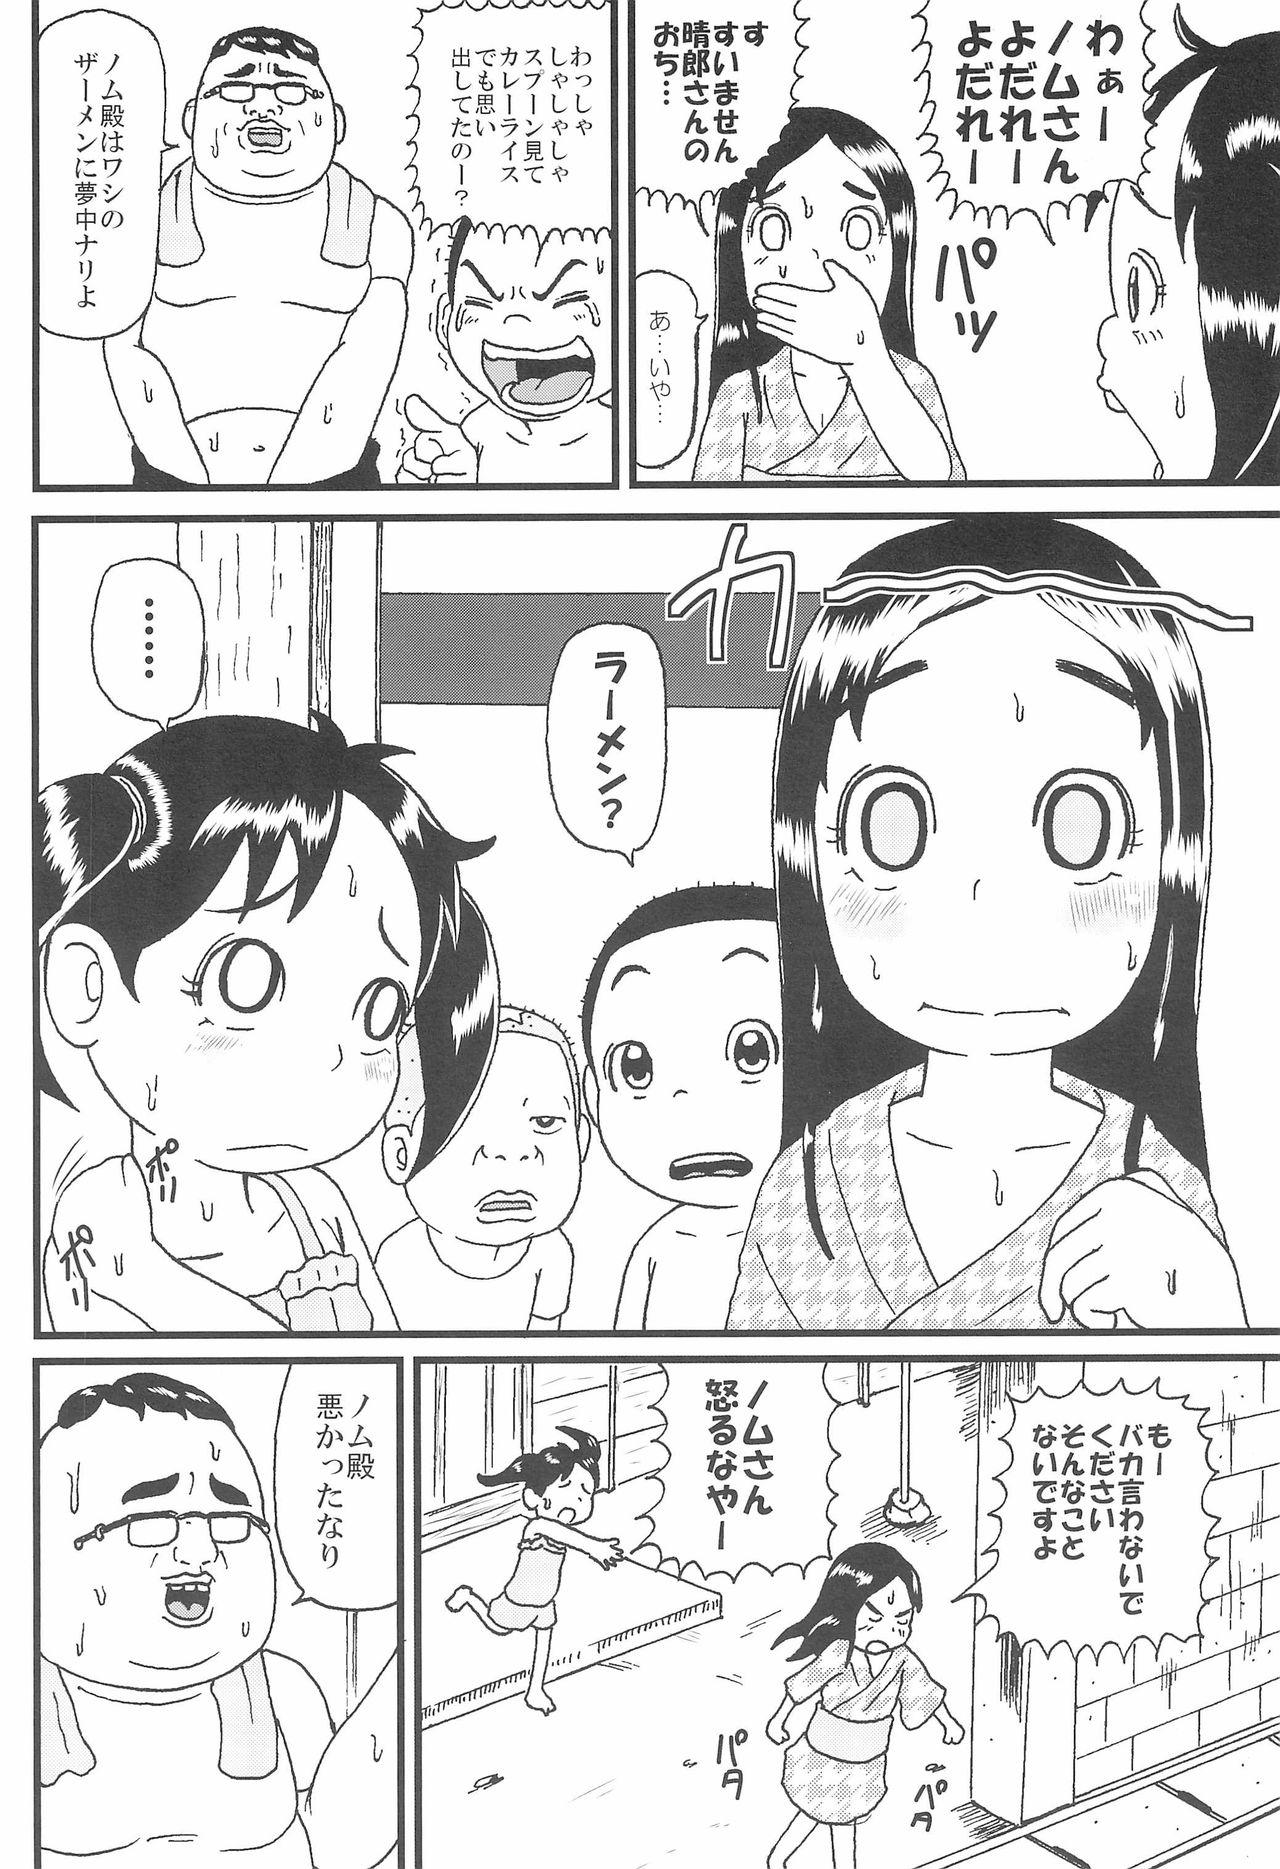 Chinese Urayasu Chibikko Land - Super radical gag family 19yo - Page 4